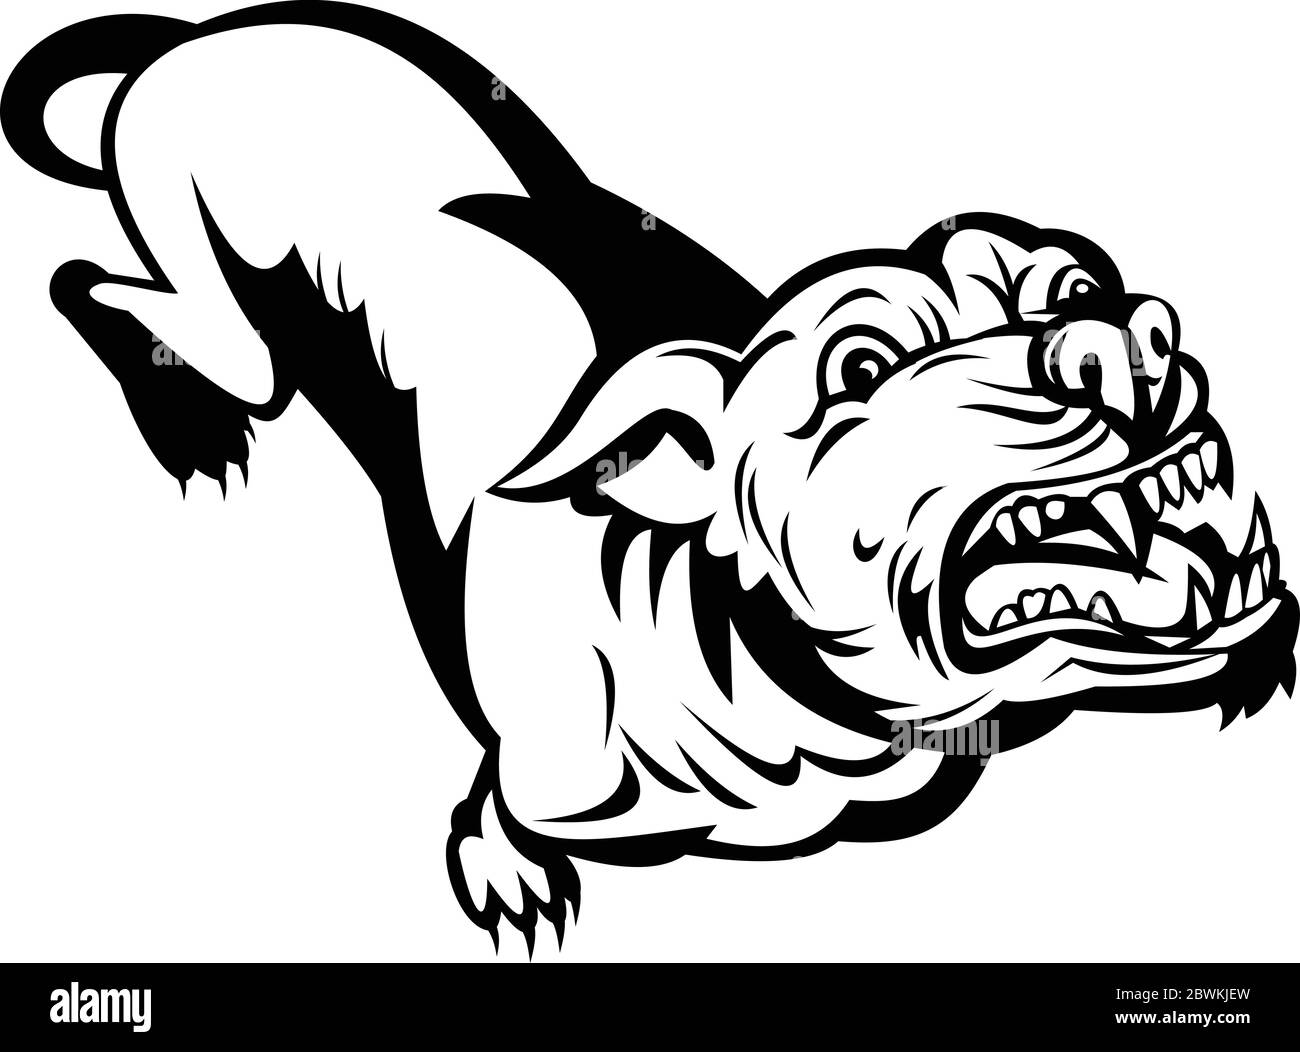 Illustrazione di stile retrò di un toro di pit o pitbull, un nome comune per un tipo di cane disceso da bulldogs e terrori, arrabbiato e abbaiare su isolato Illustrazione Vettoriale